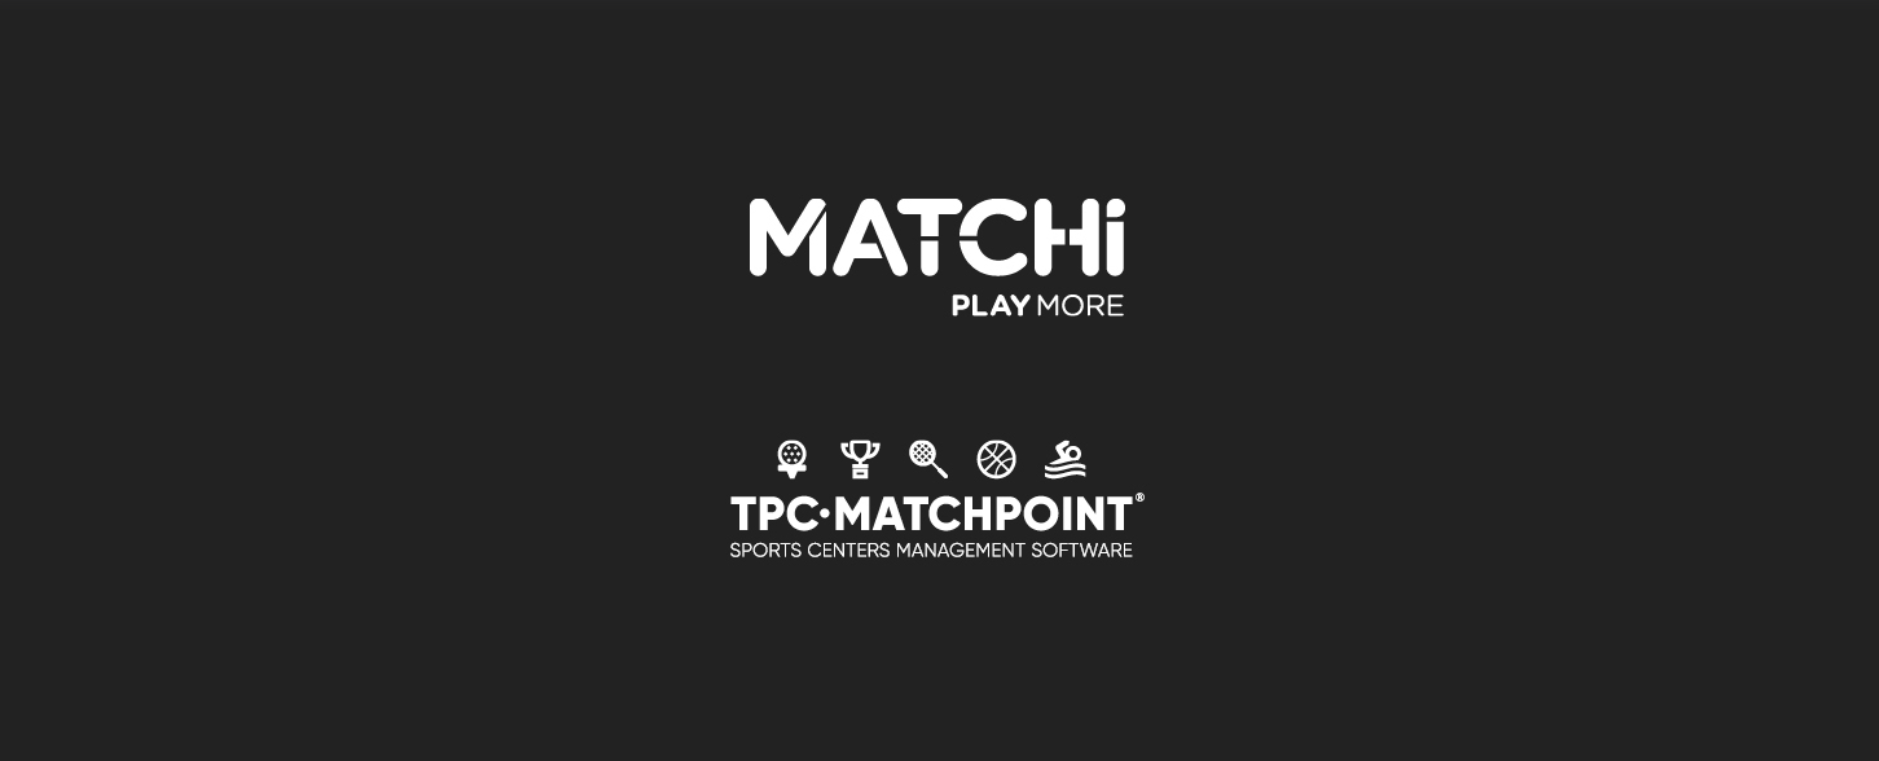 TPC Matchpoint samarbejder med MATCHi og skaber et af de største ketsjersportsnetværk i verden!